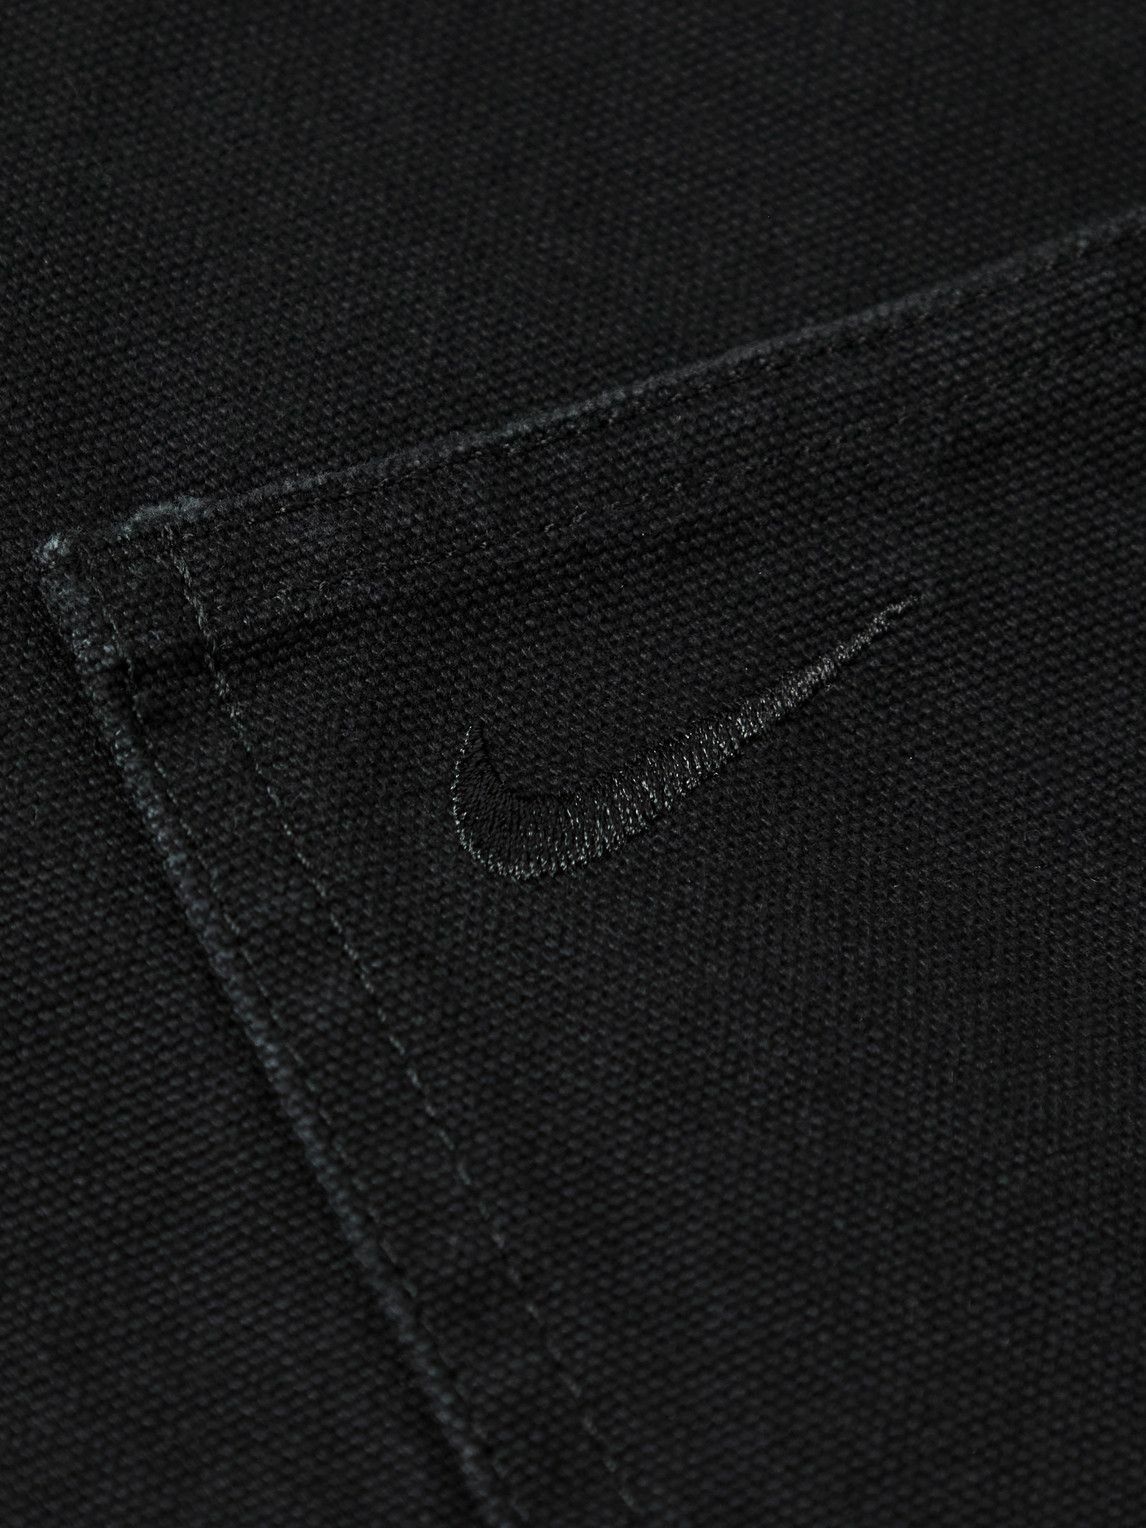 Nike - Life Logo-Embroidered Cotton-Canvas Chore Jacket - Black Nike